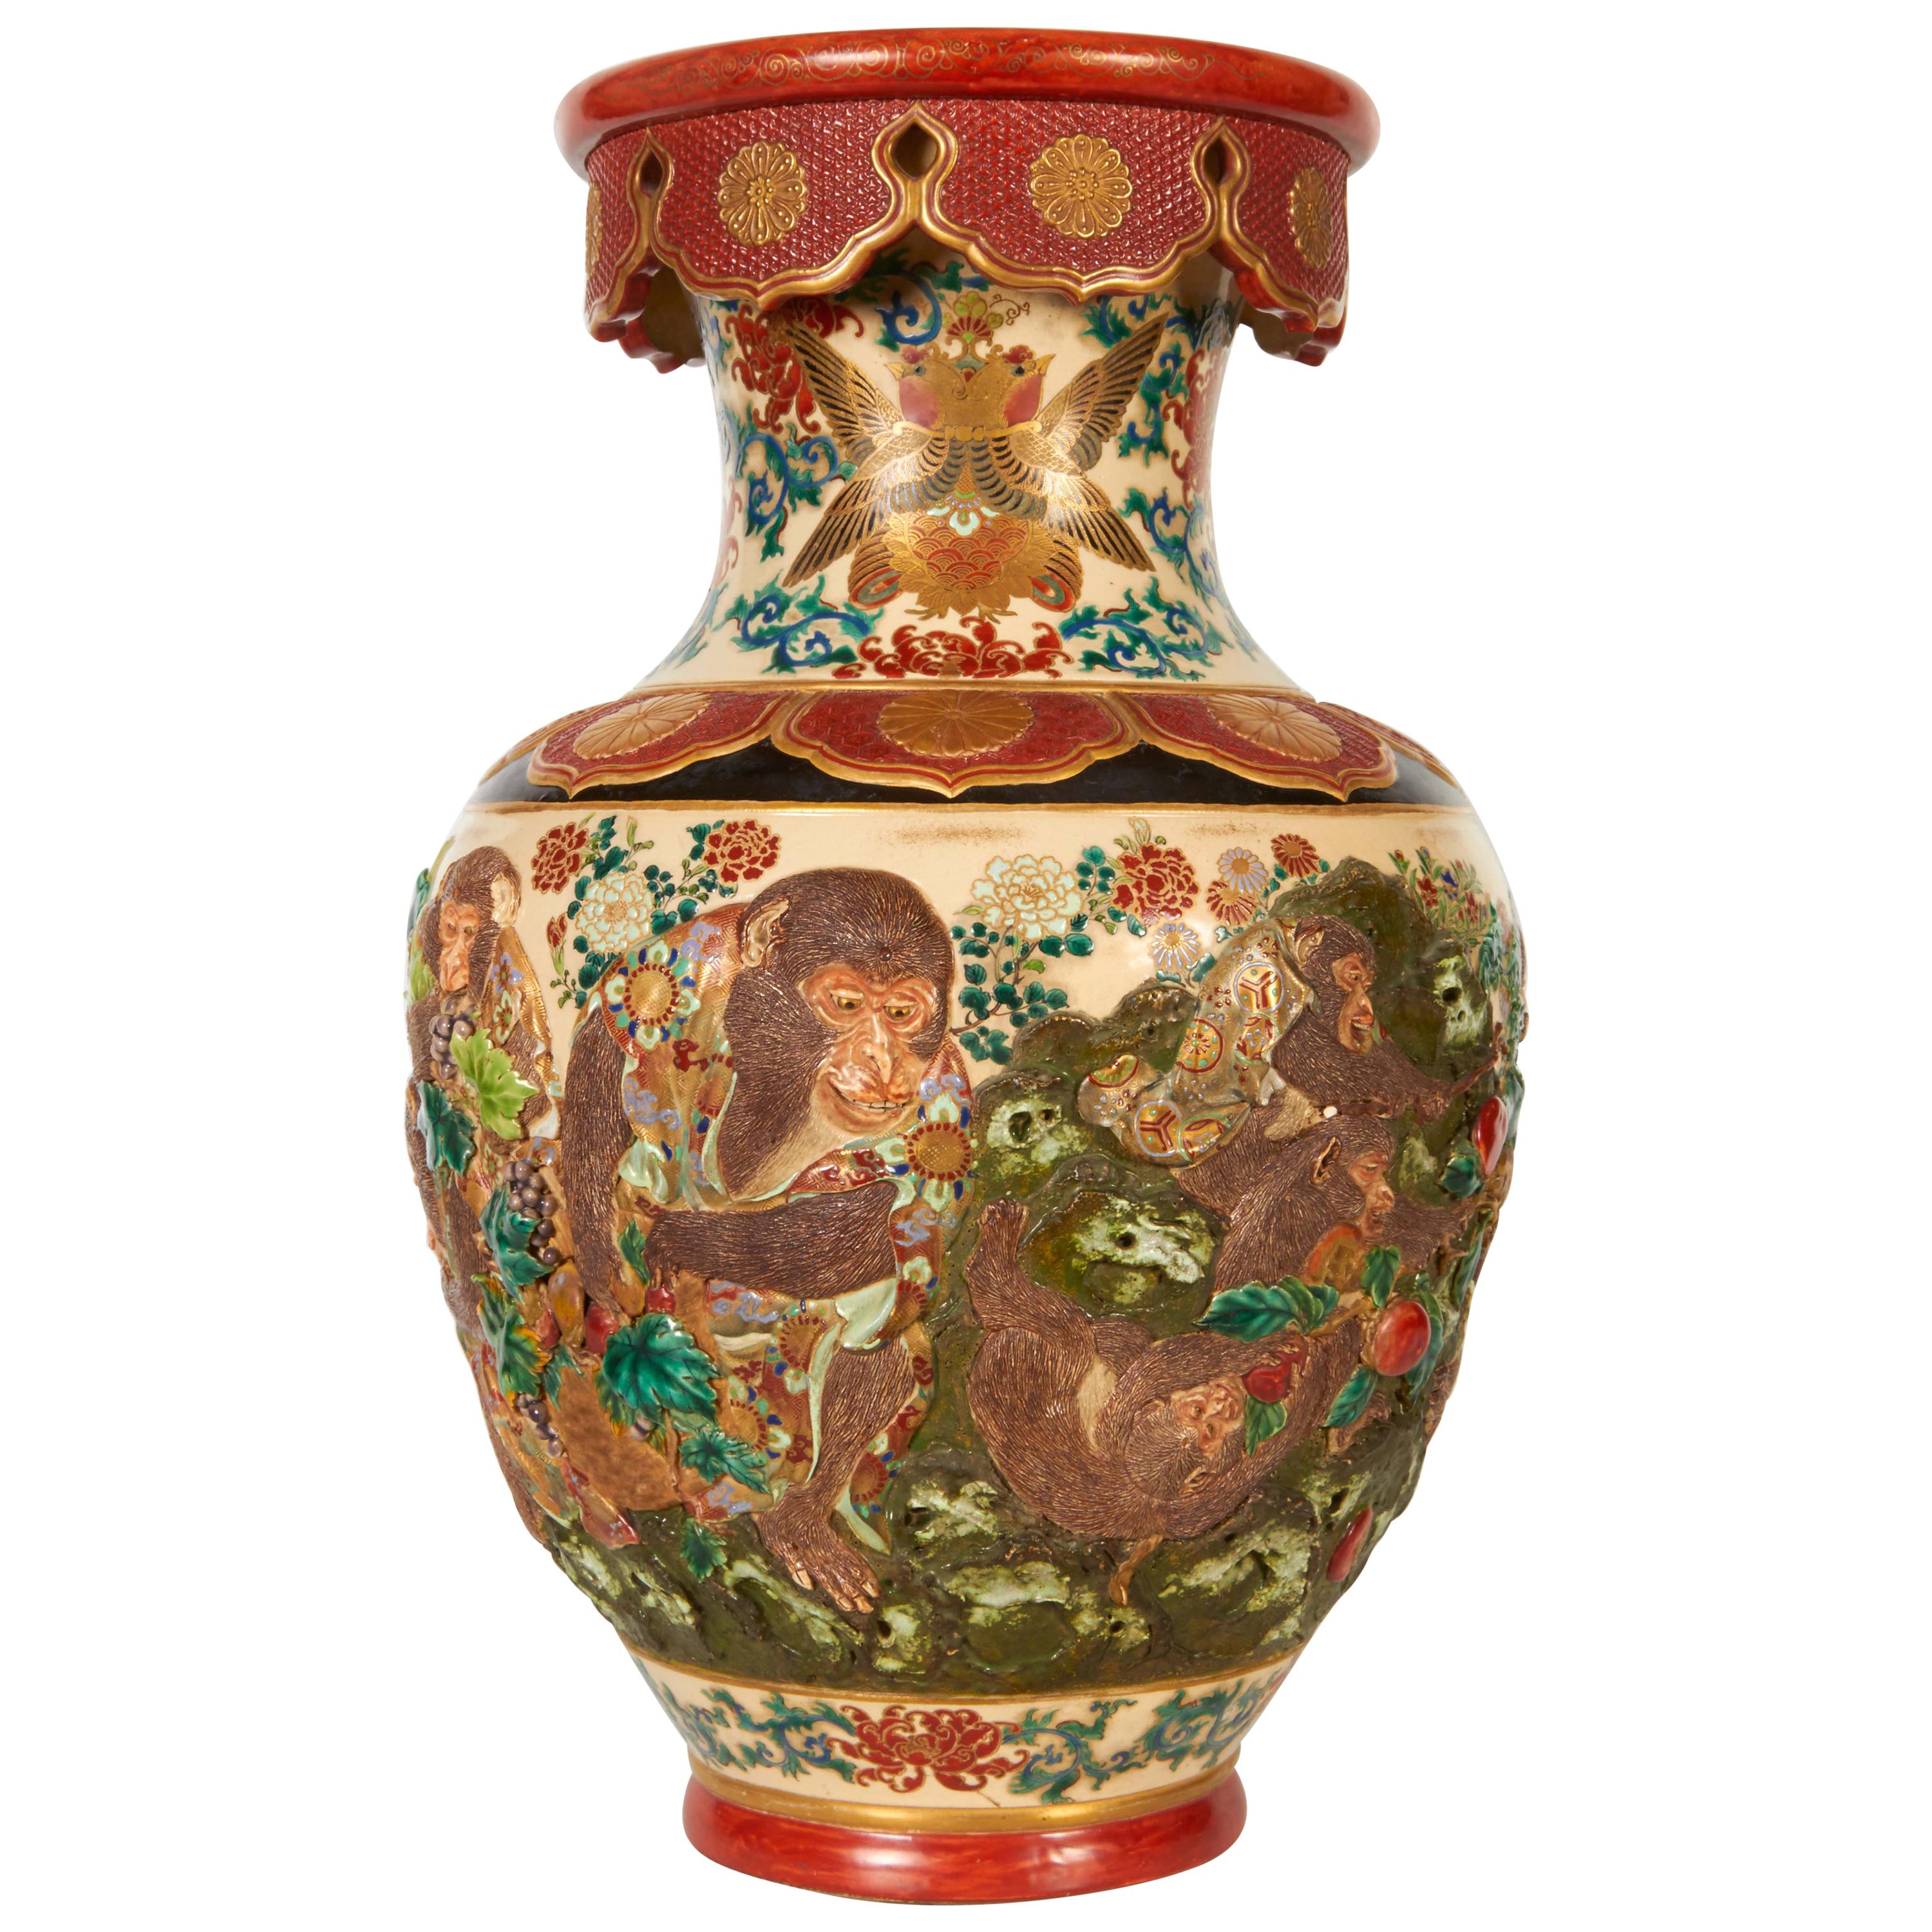 Monkey Vase - 51 For Sale on 1stDibs